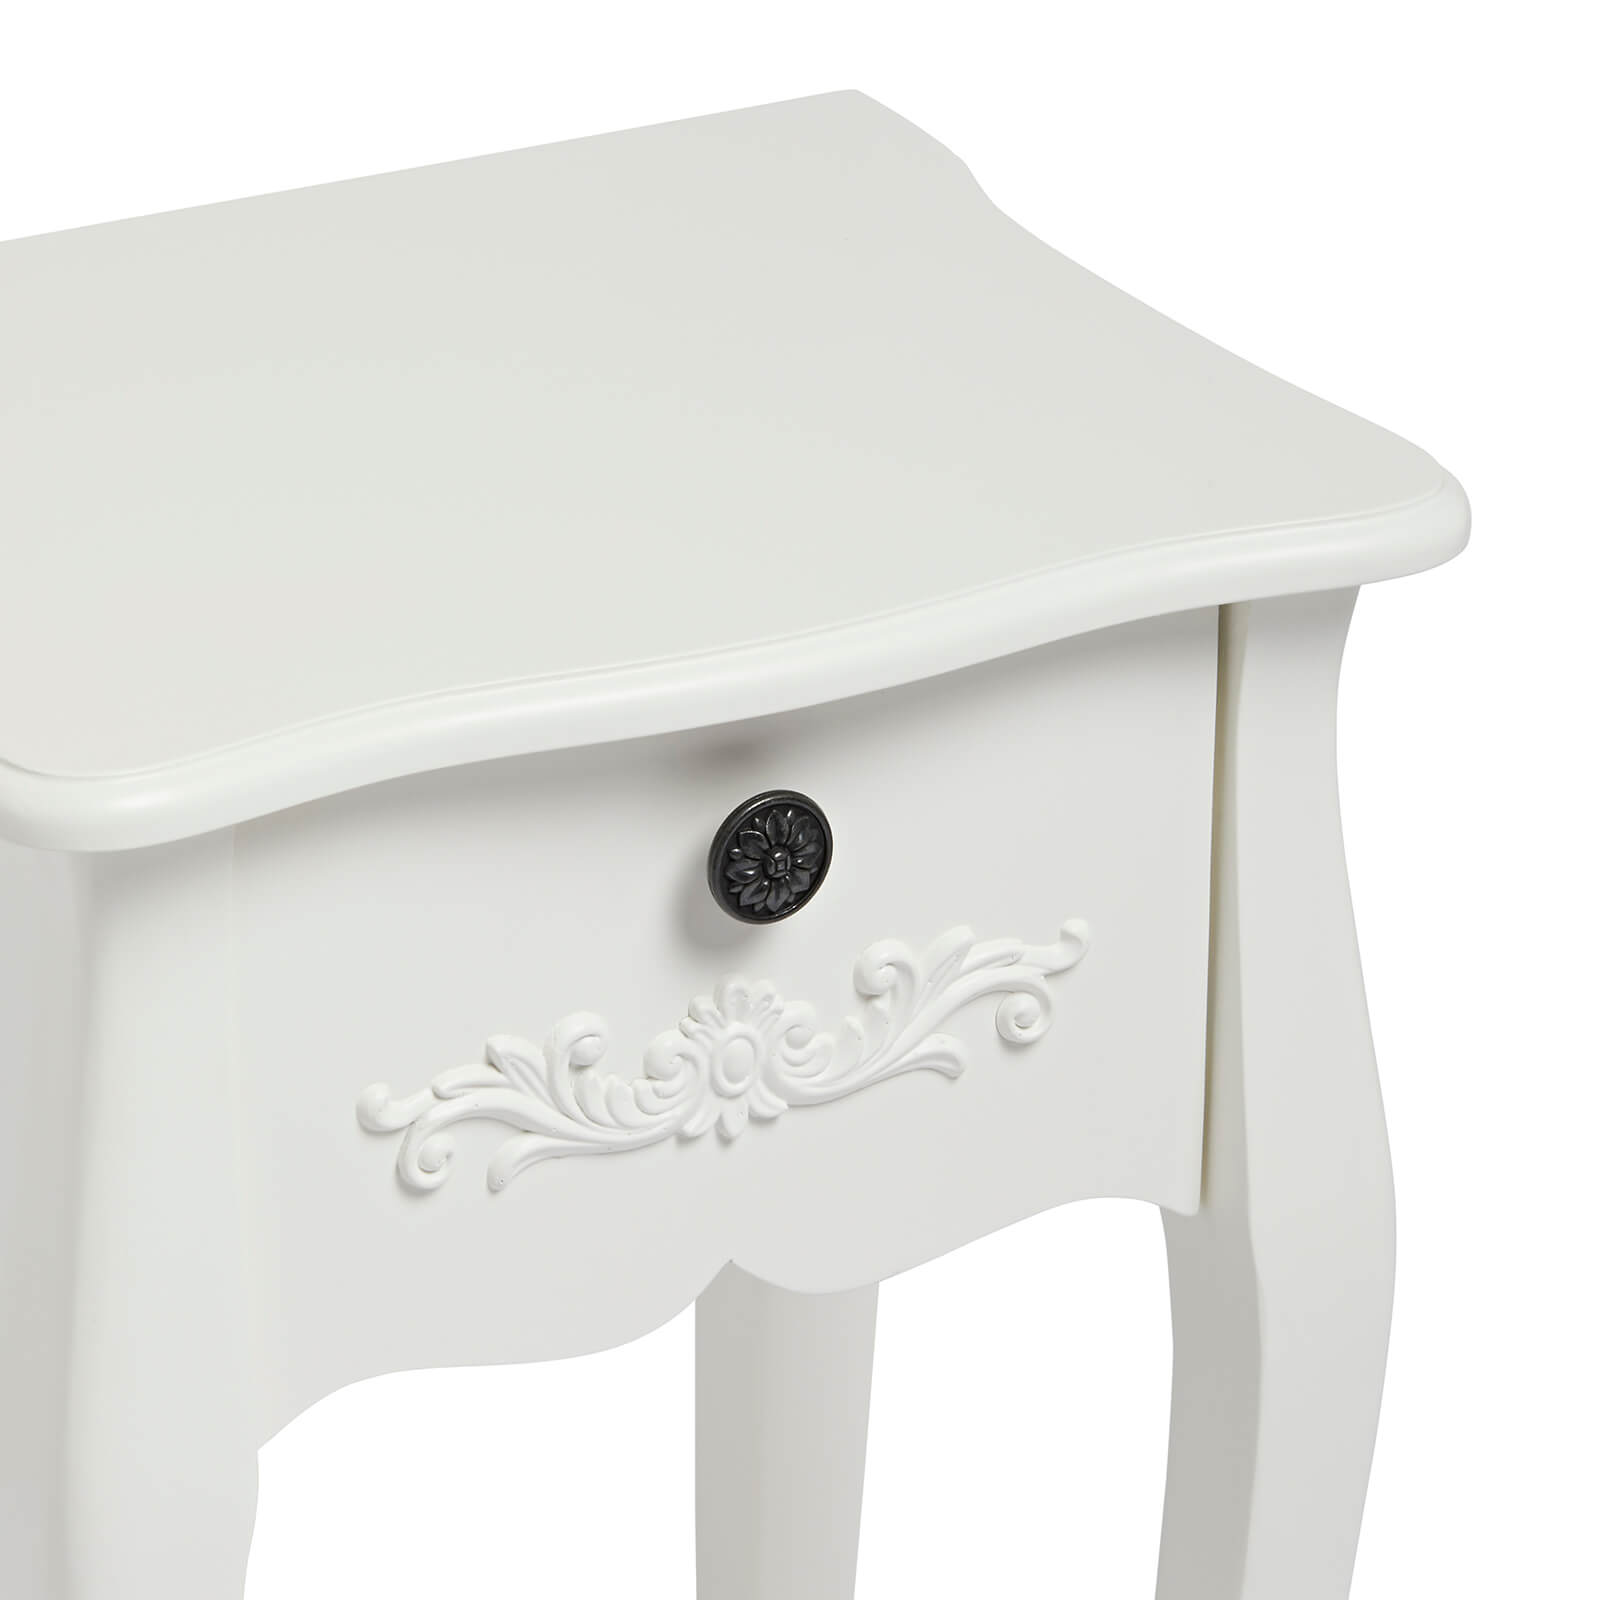 Antoinette 1 Drawer Nightstand - White